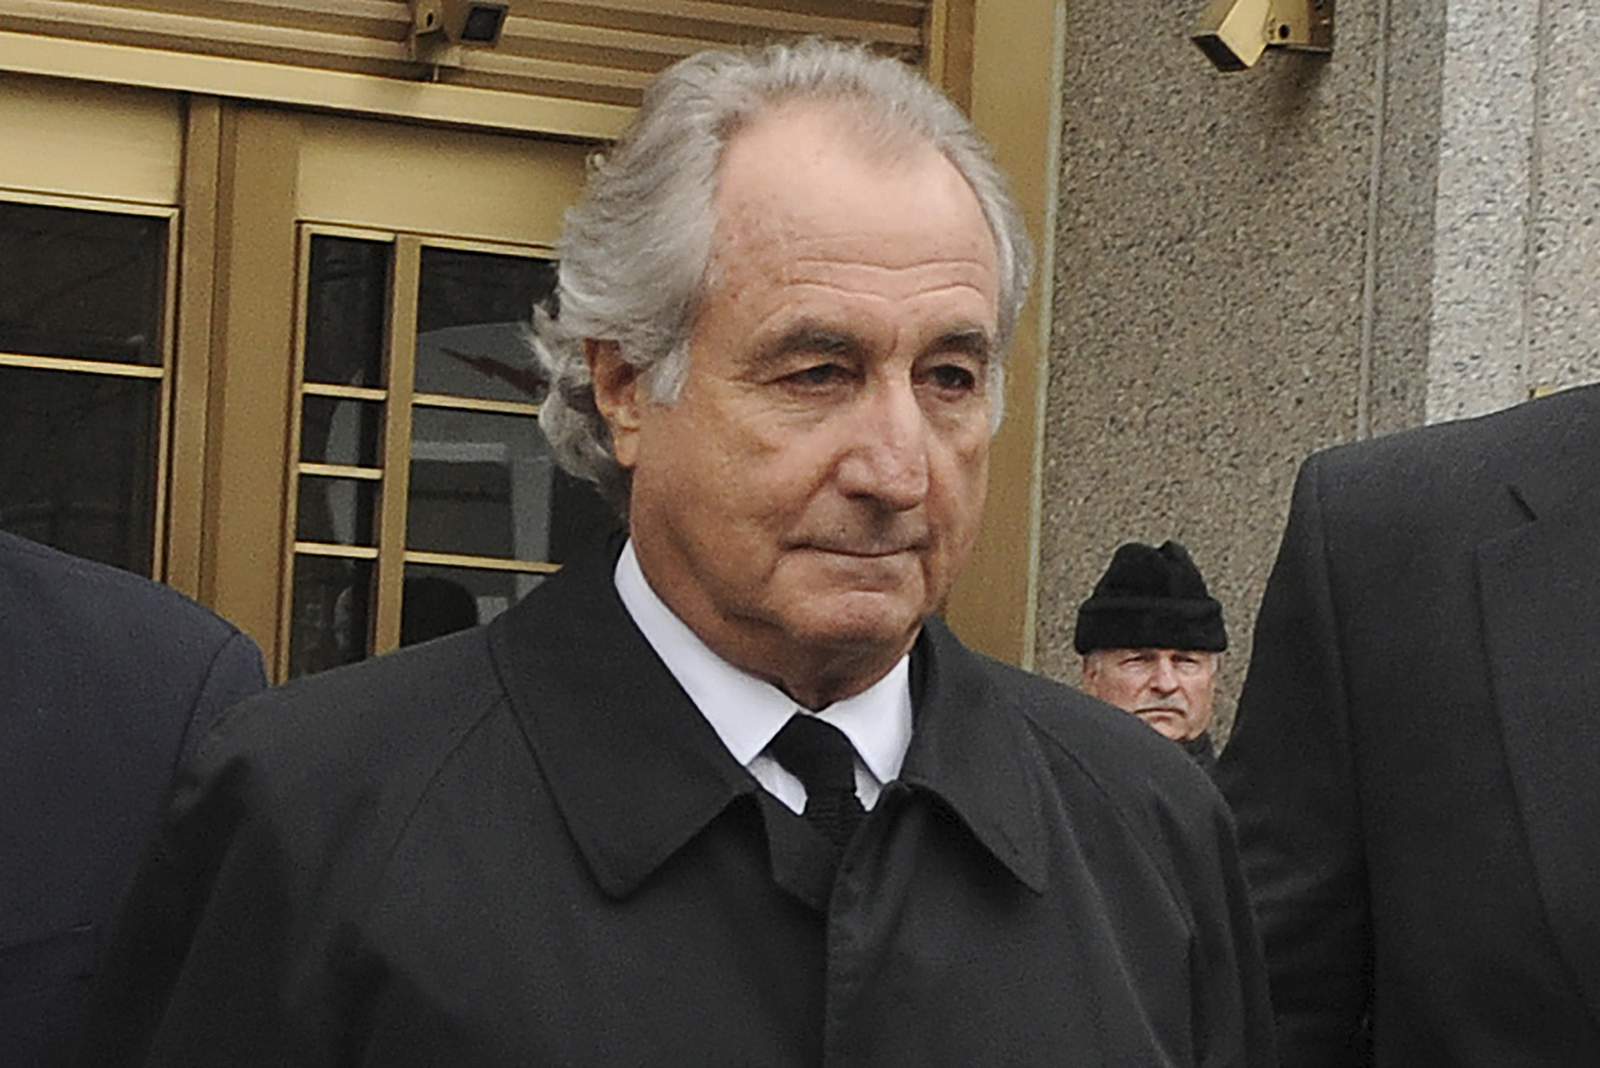 Ponzi schemer Bernie Madoff dies in prison at 82